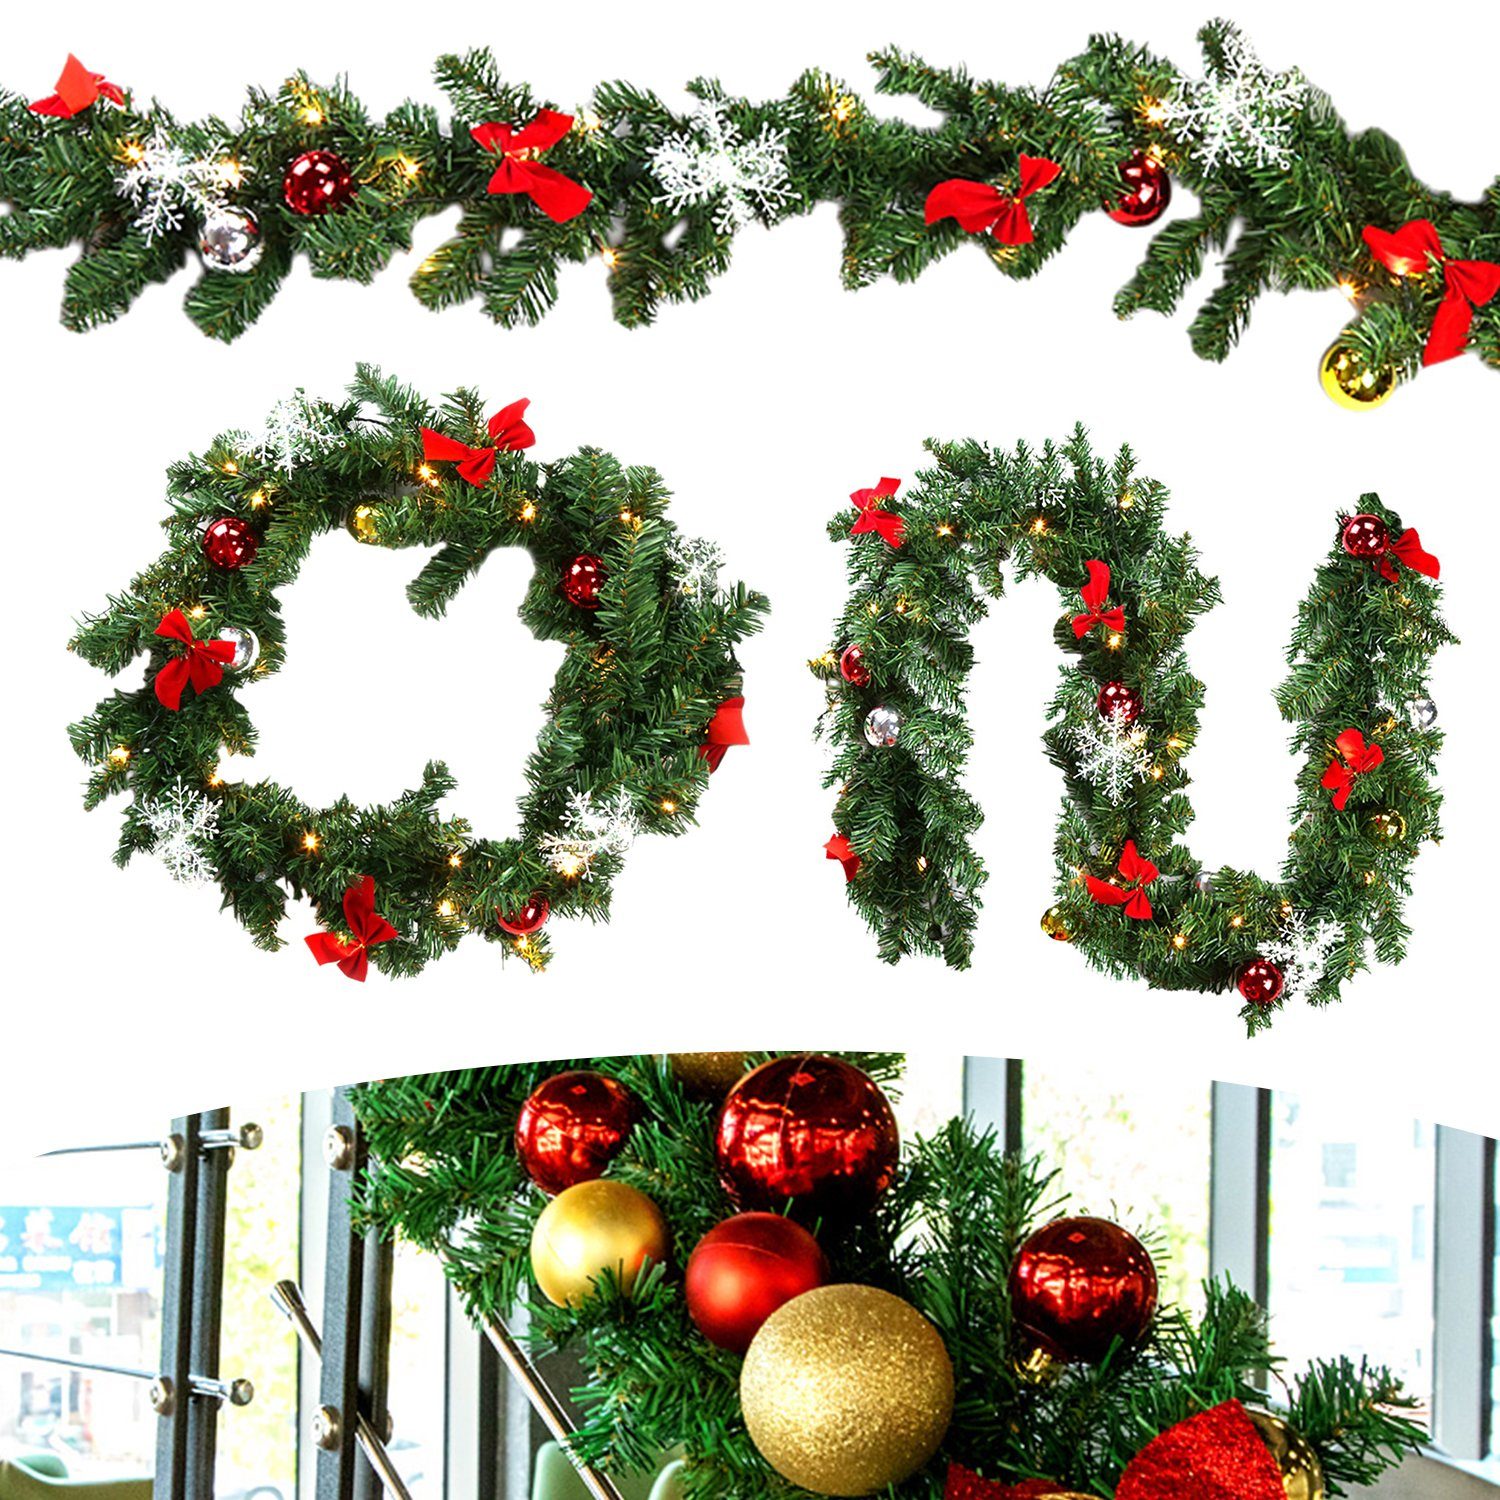 Kunstgirlande Christbaumschmuck, 2x Weihnachtsgirlande 5m,Tannengirlande  mit 100 LED warmweiß inkl.Deko. Girlande Weihnachten Innen Außen Treppen  Kamine Weihnachten,Festgirlanden, Clanmacy